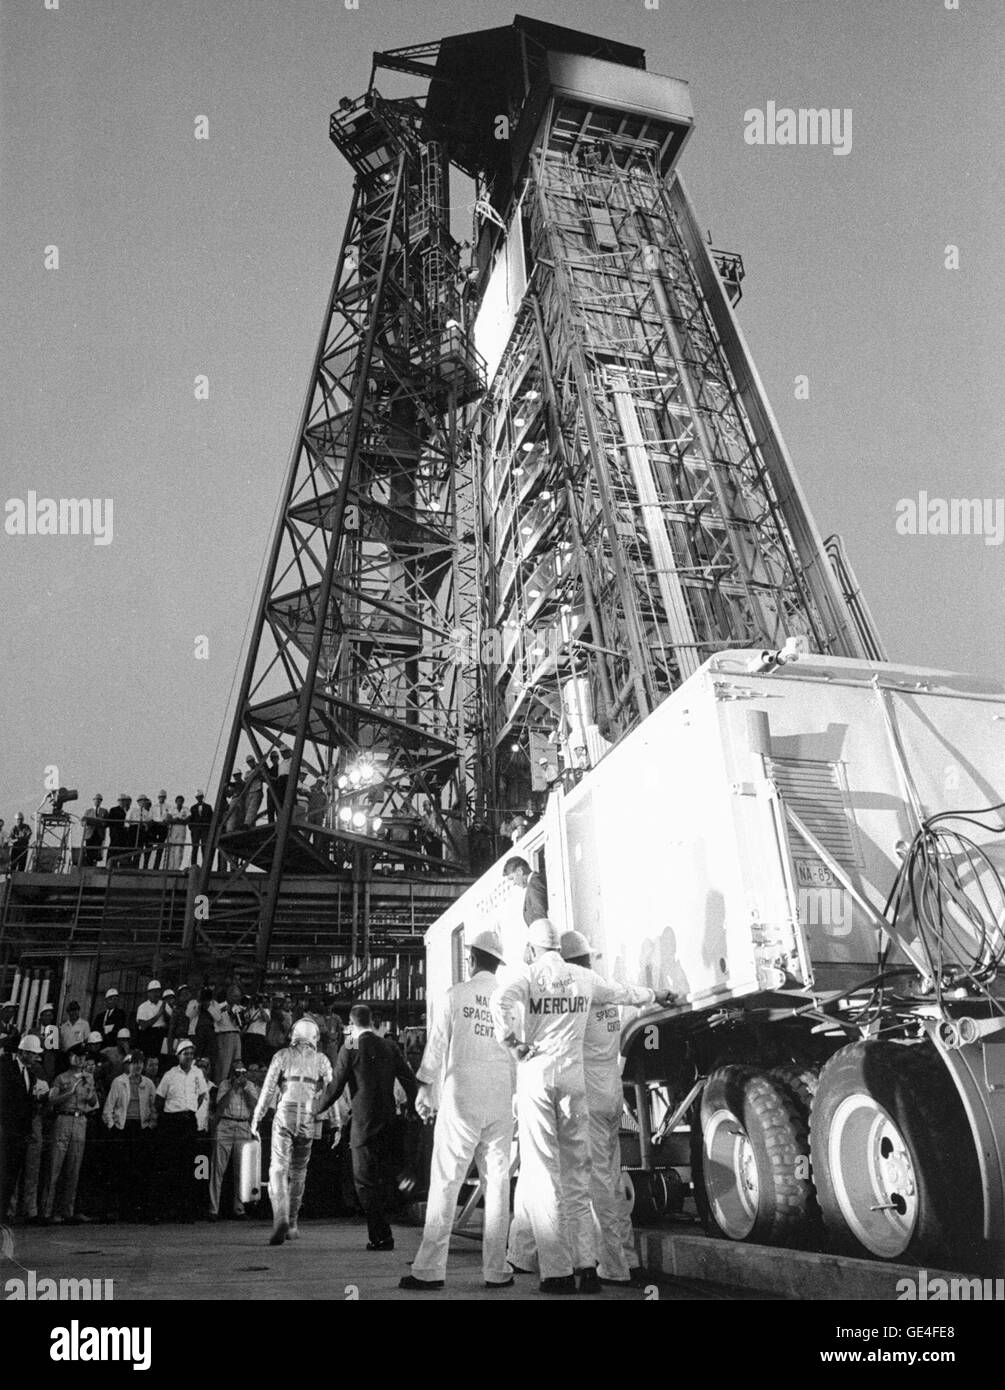 El astronauta Gordon Cooper, partiendo de la transferencia van en su traje y el casco de presión de plata, es saludado con aplausos de los reunidos Pad 14 empleados. Cuando llega a la base de la torre de servicio, él andará en un ascensor hasta donde su nave espacial Mercury apodada "la fe 7" espera su llegada. Imagen # : 63-MA9-132 Mayo 15, 1963. Foto de stock